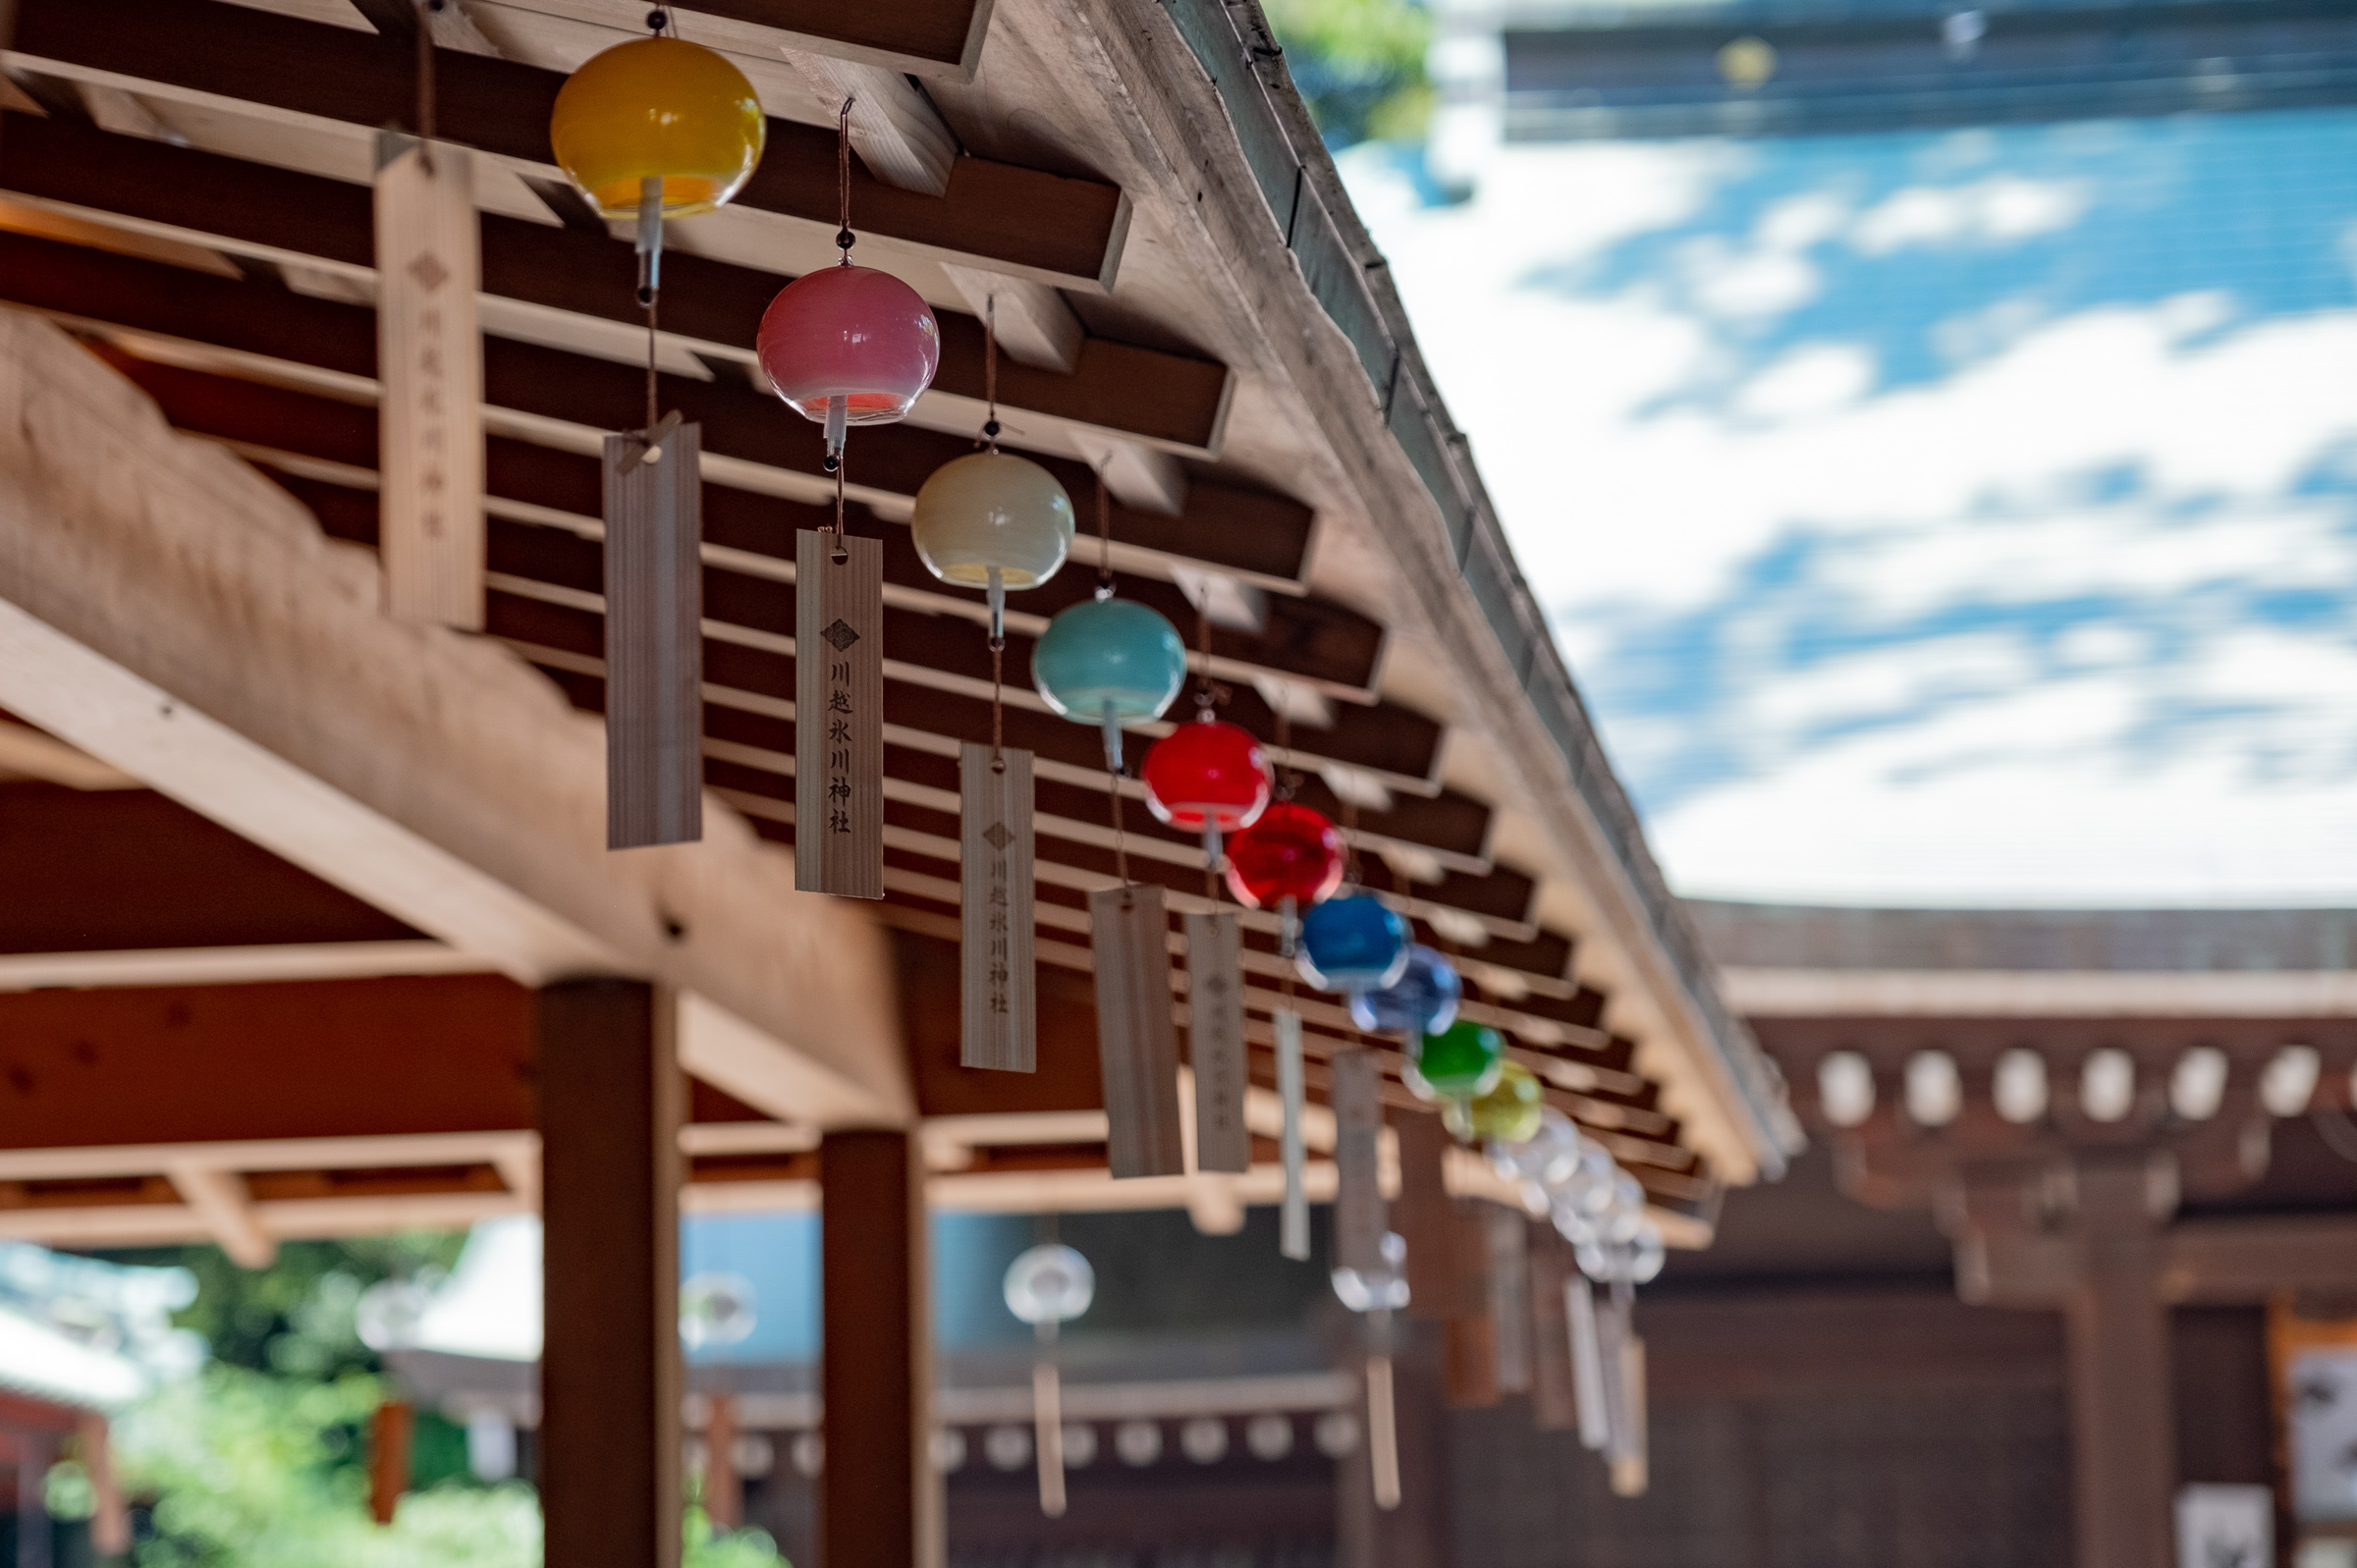 夏の涼を感じる江戸風鈴のある風景 川越の氷川神社 フリー写真有 イメージガレージ